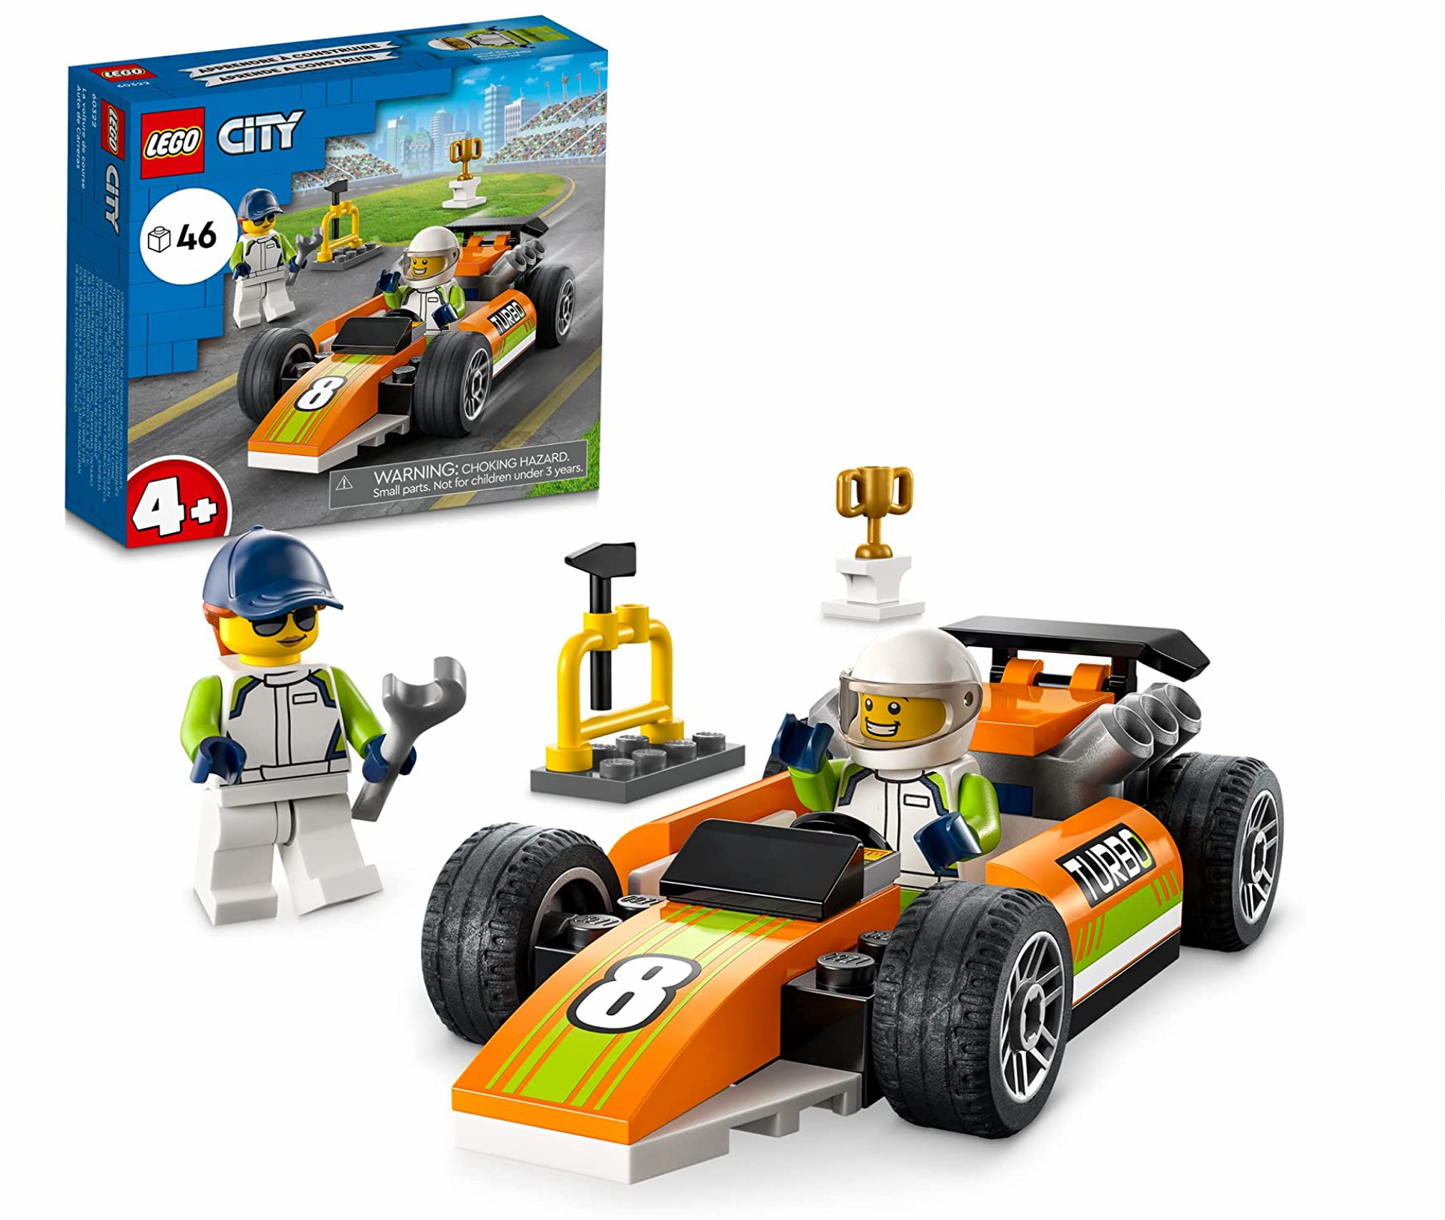 60322 LEGO City Race Car